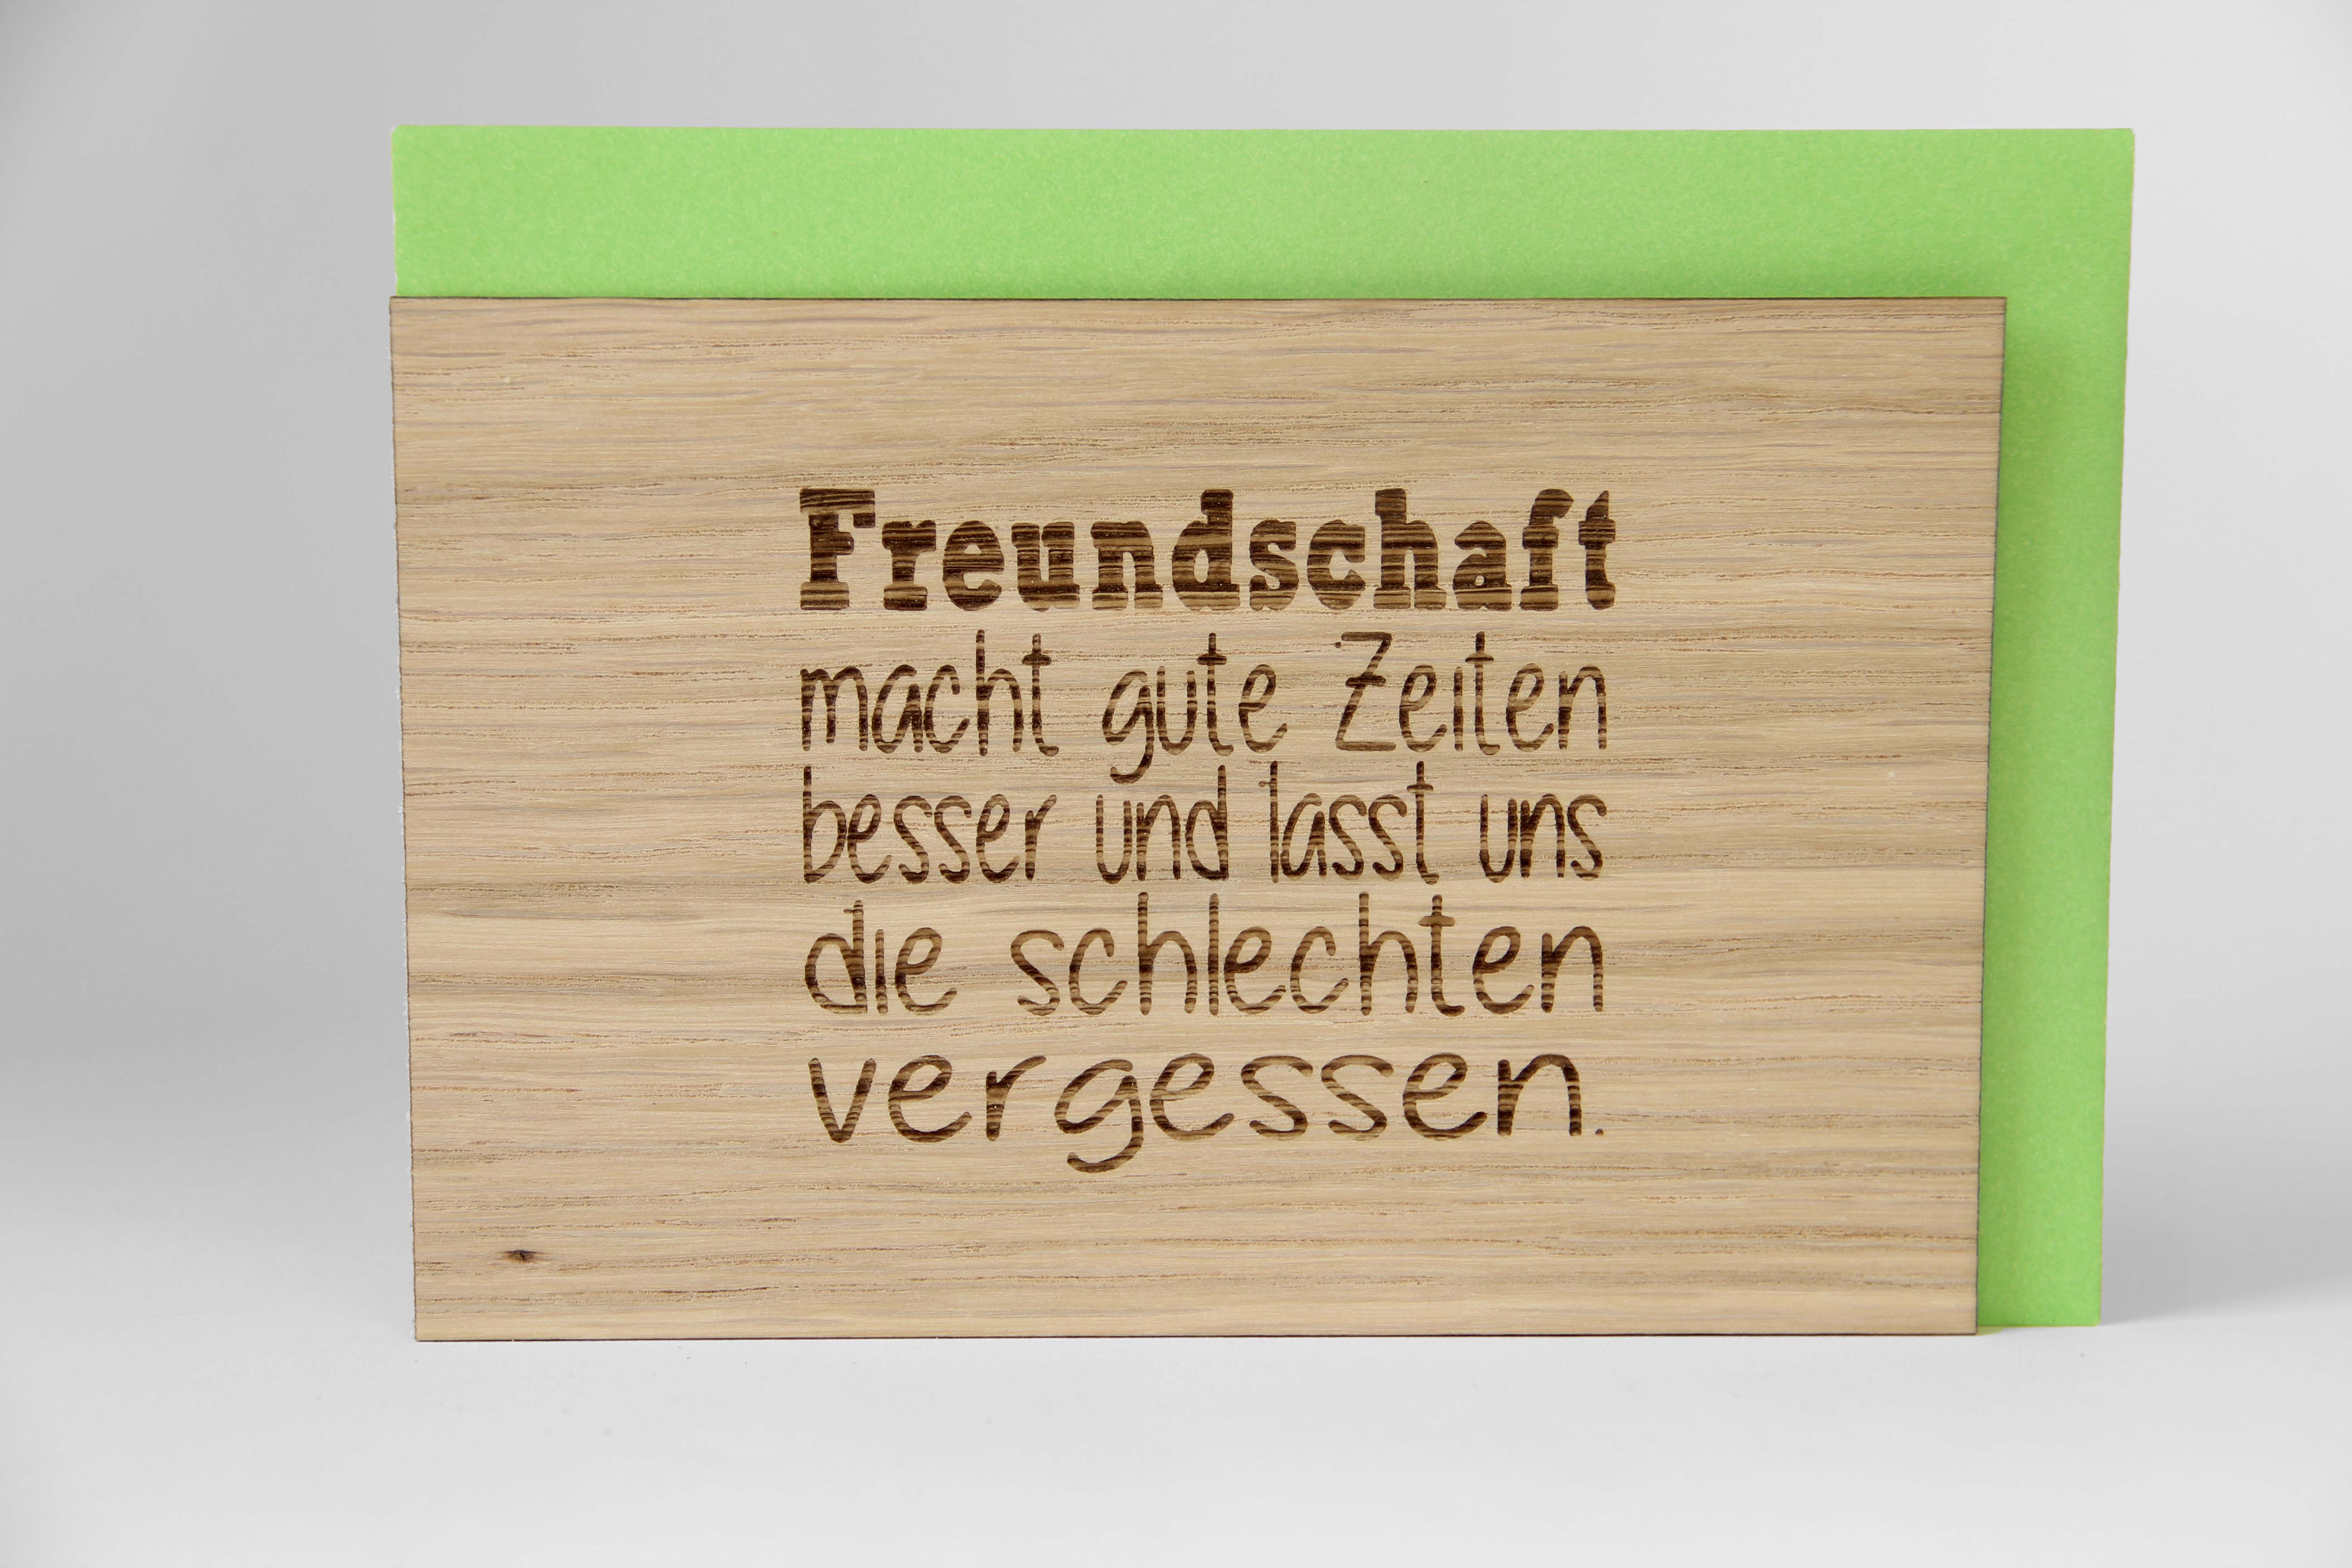 Holzgrusskarten - Geschenkkarte Spruchkarte "Freundschaft macht gute Zeiten besser und lässt uns die schlechten vergessen" aus Eiche